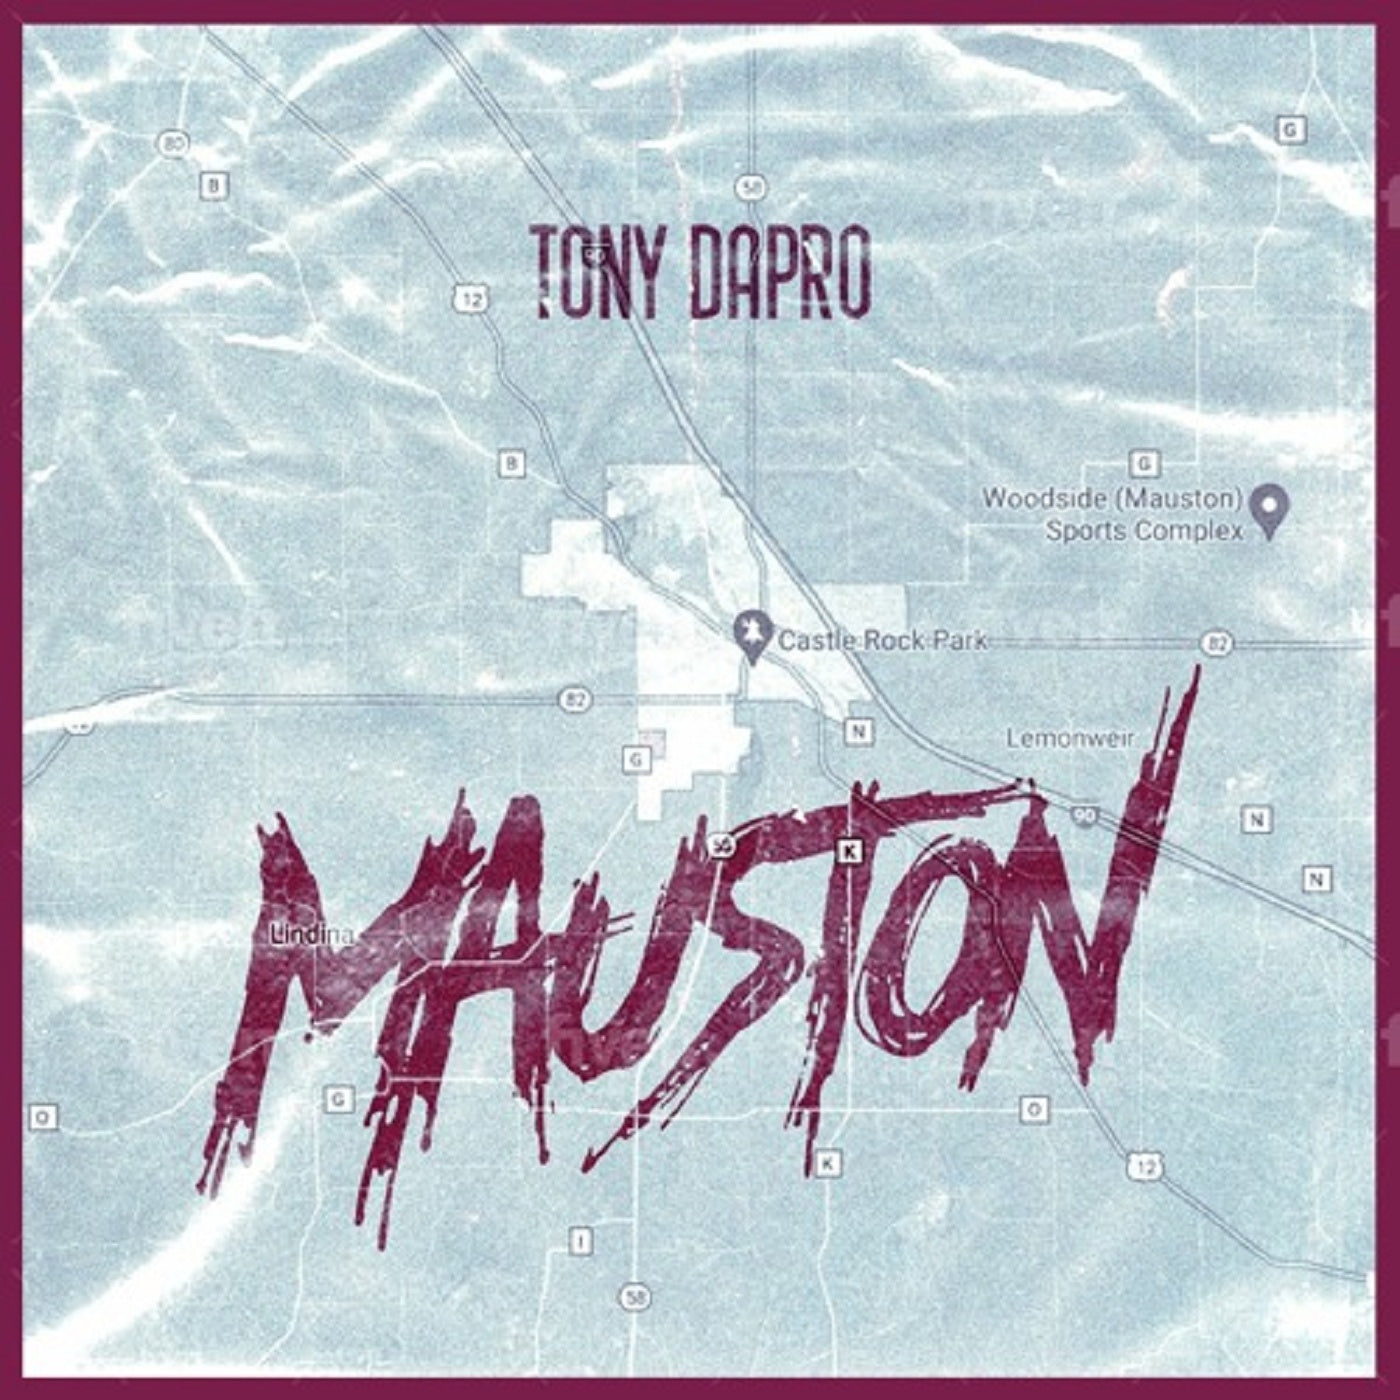 Tony Dapro – ‘Mauston’